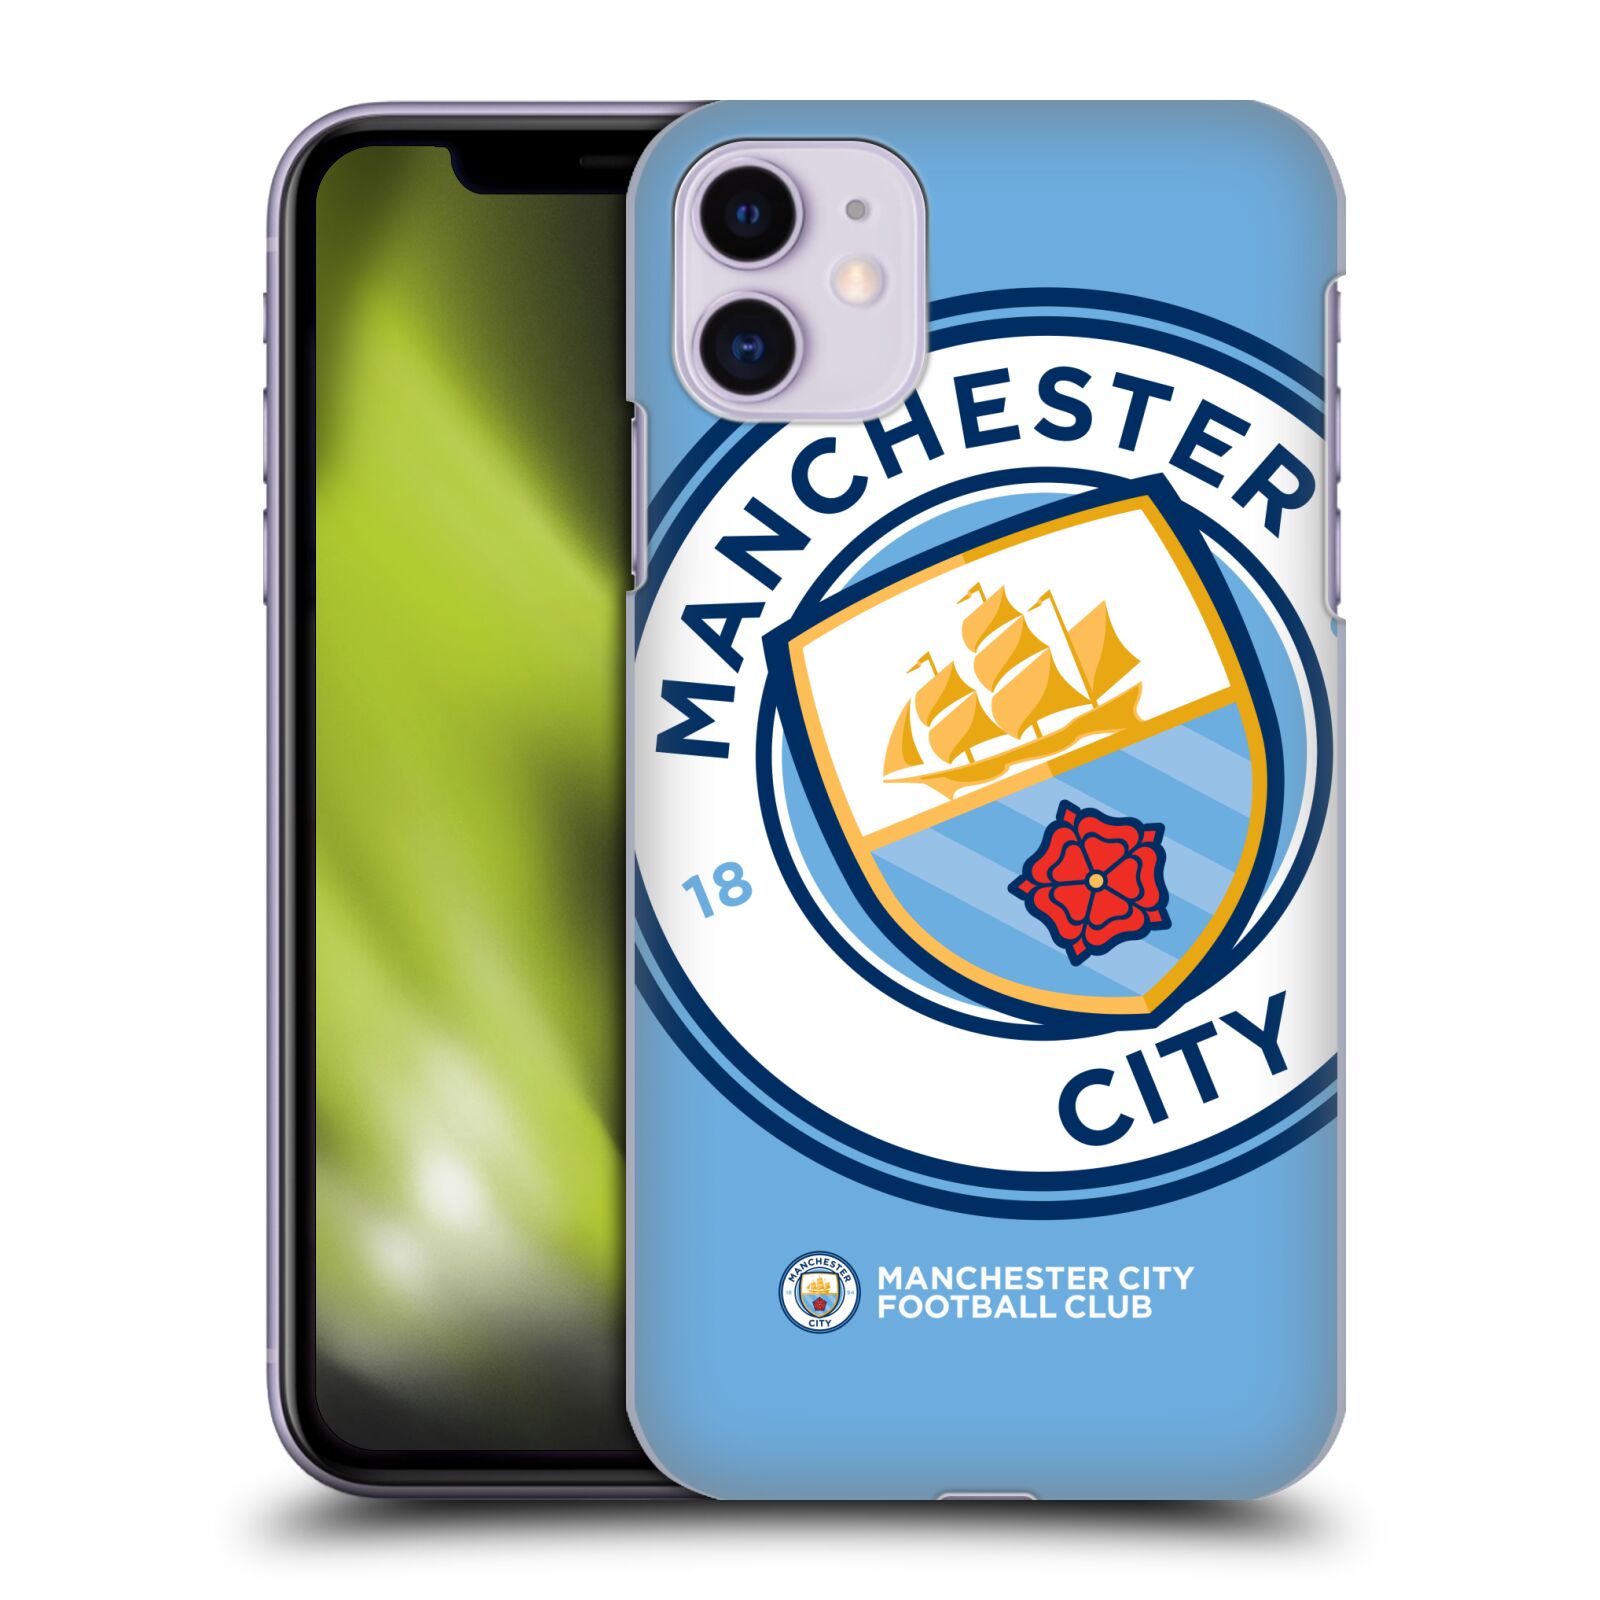 Pouzdro na mobil Apple Iphone 11 - HEAD CASE - Fotbalový klub Manchester City modrý velký přesahující znak